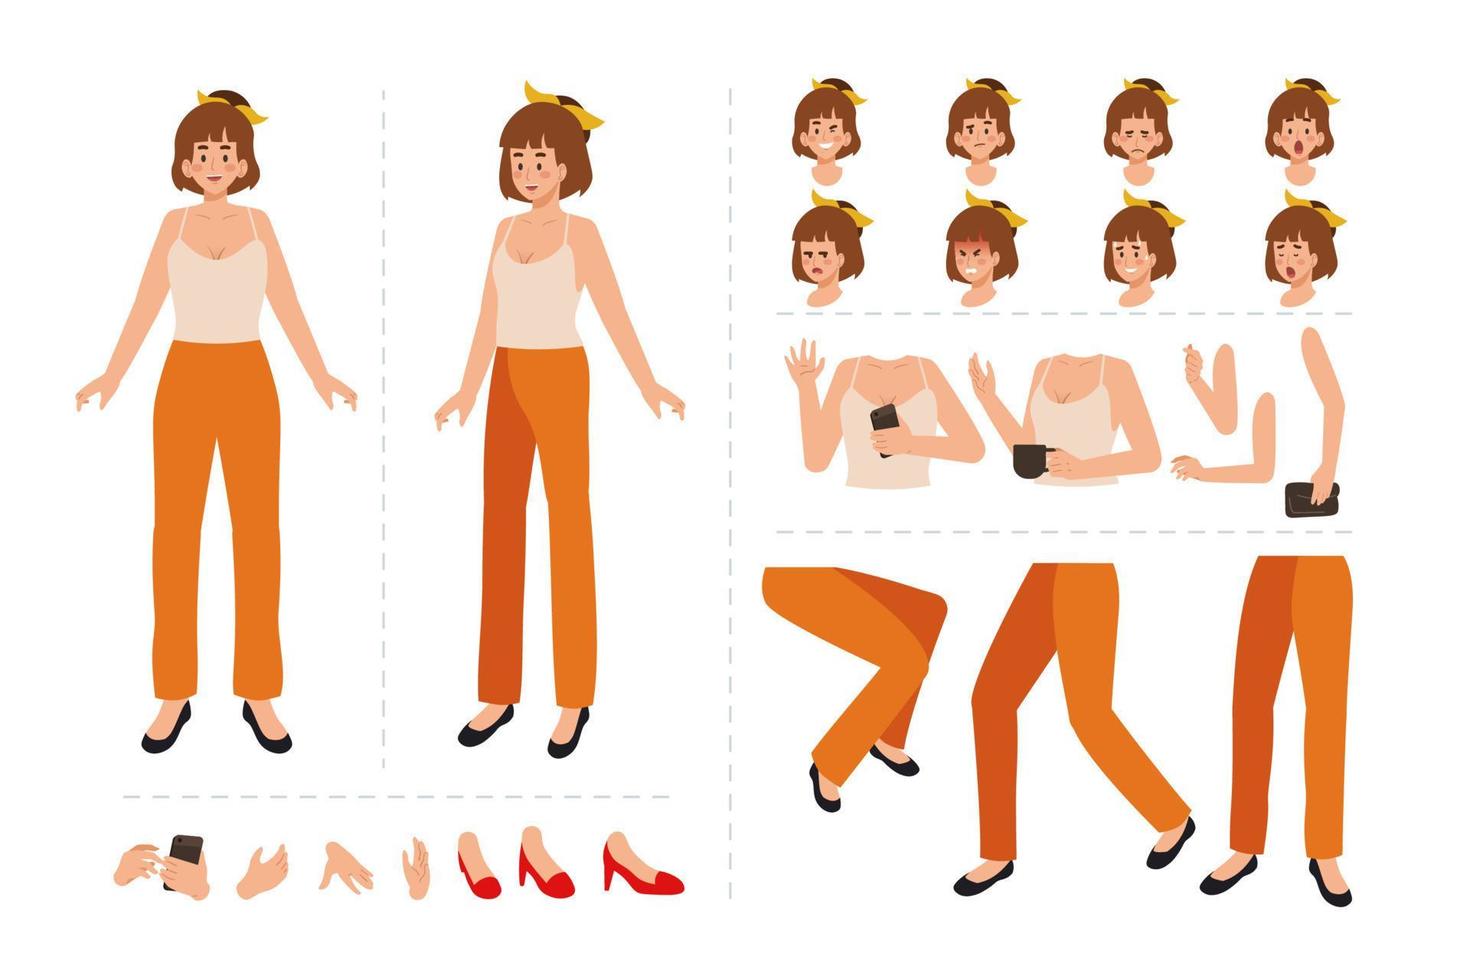 söt flicka tecknad serie karaktär för rörelse design med ansiktsbehandling uttryck, hand gester, kropp och ben rörelse illustration vektor